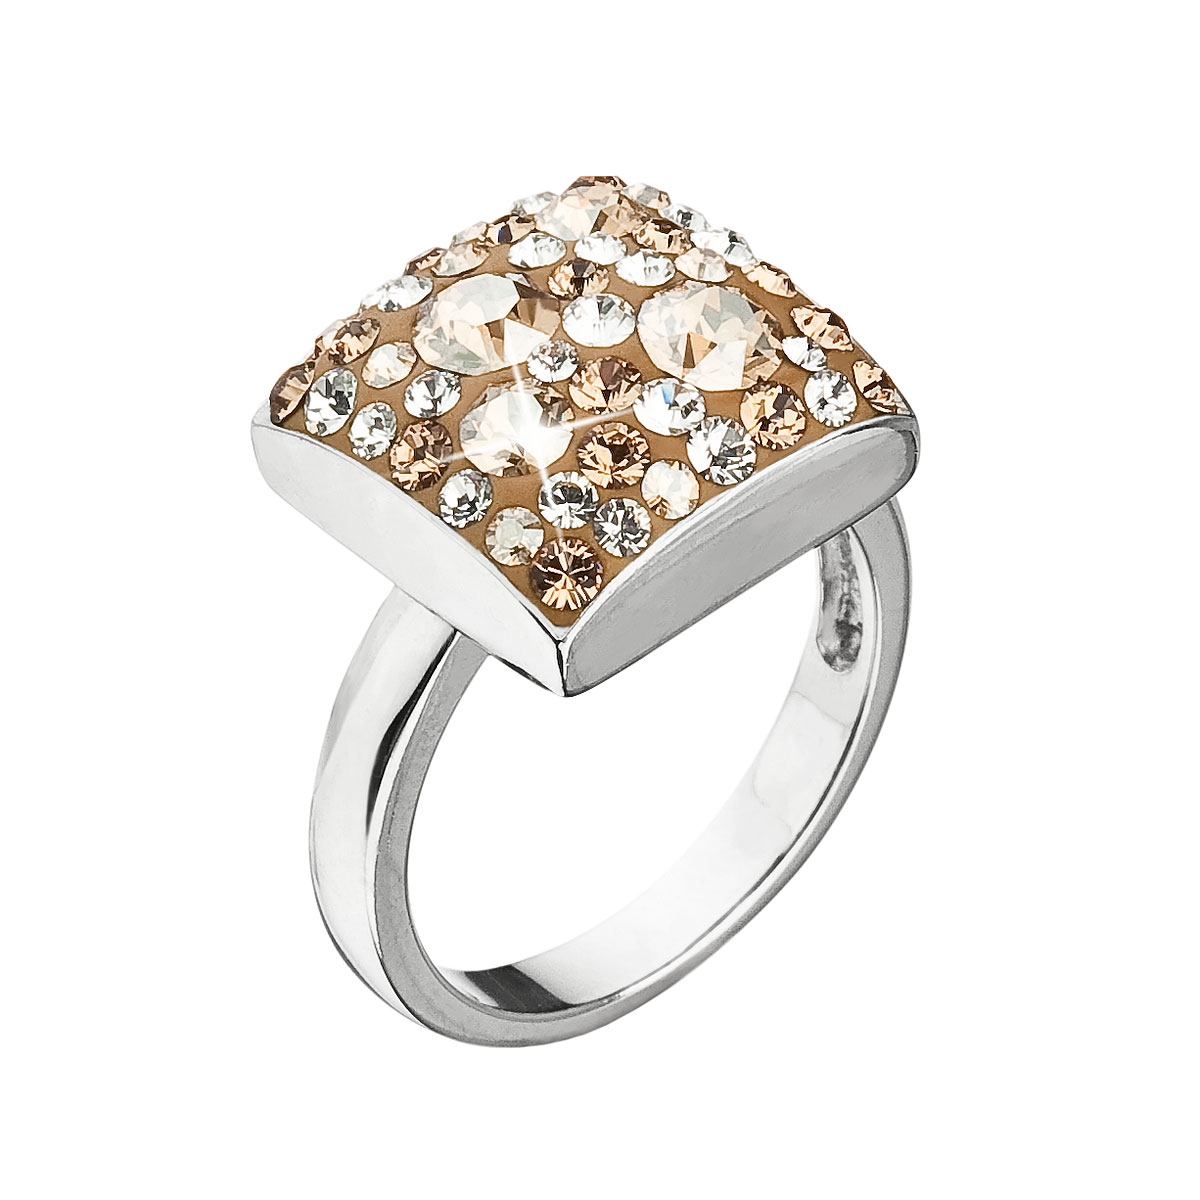 Strieborný prsteň s kryštálmi Swarovski Gold